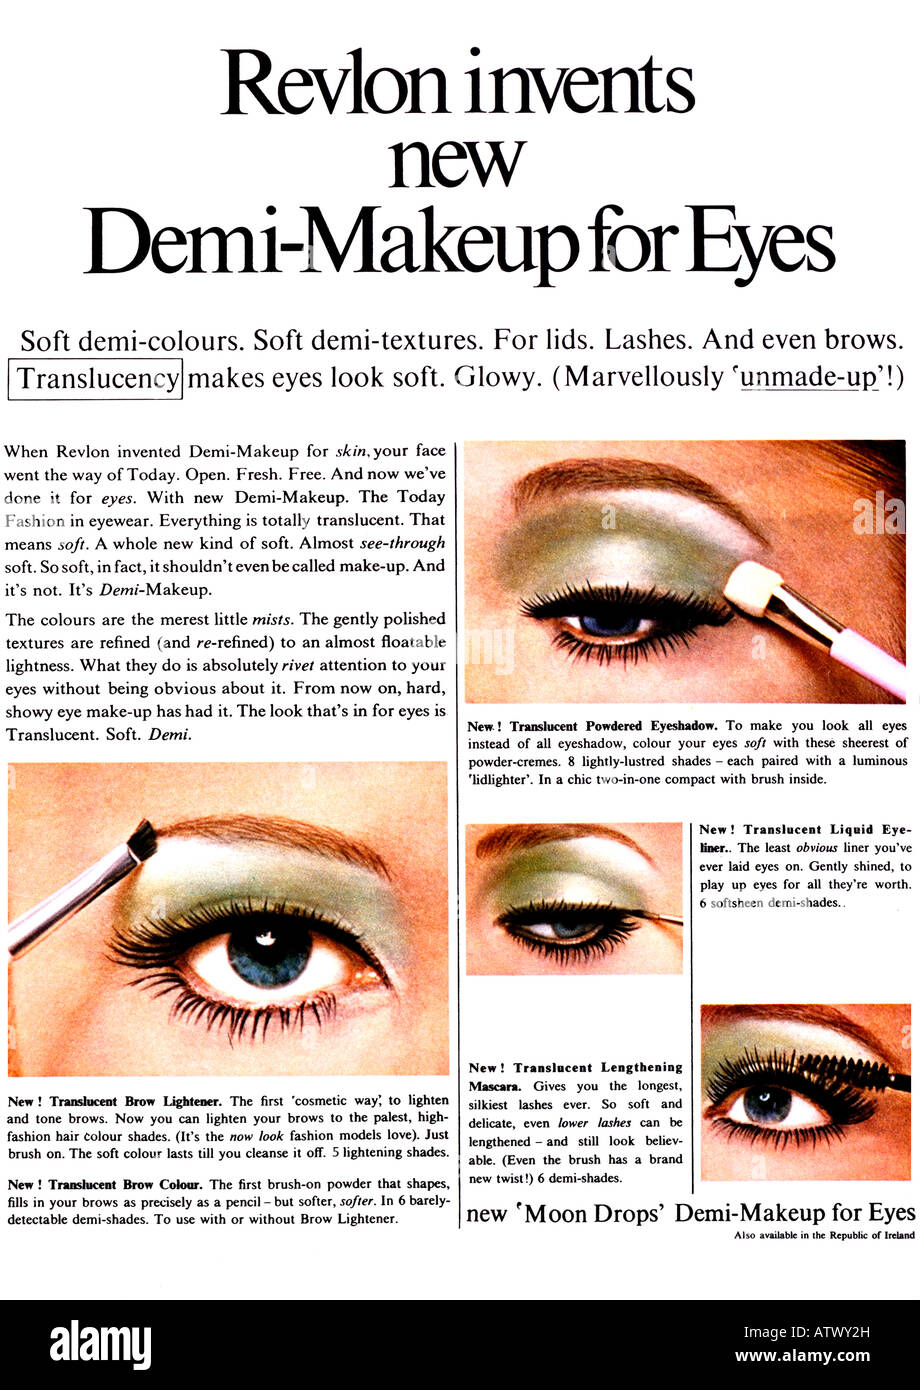 Makeup advert Banque de photographies et d'images à haute résolution - Alamy